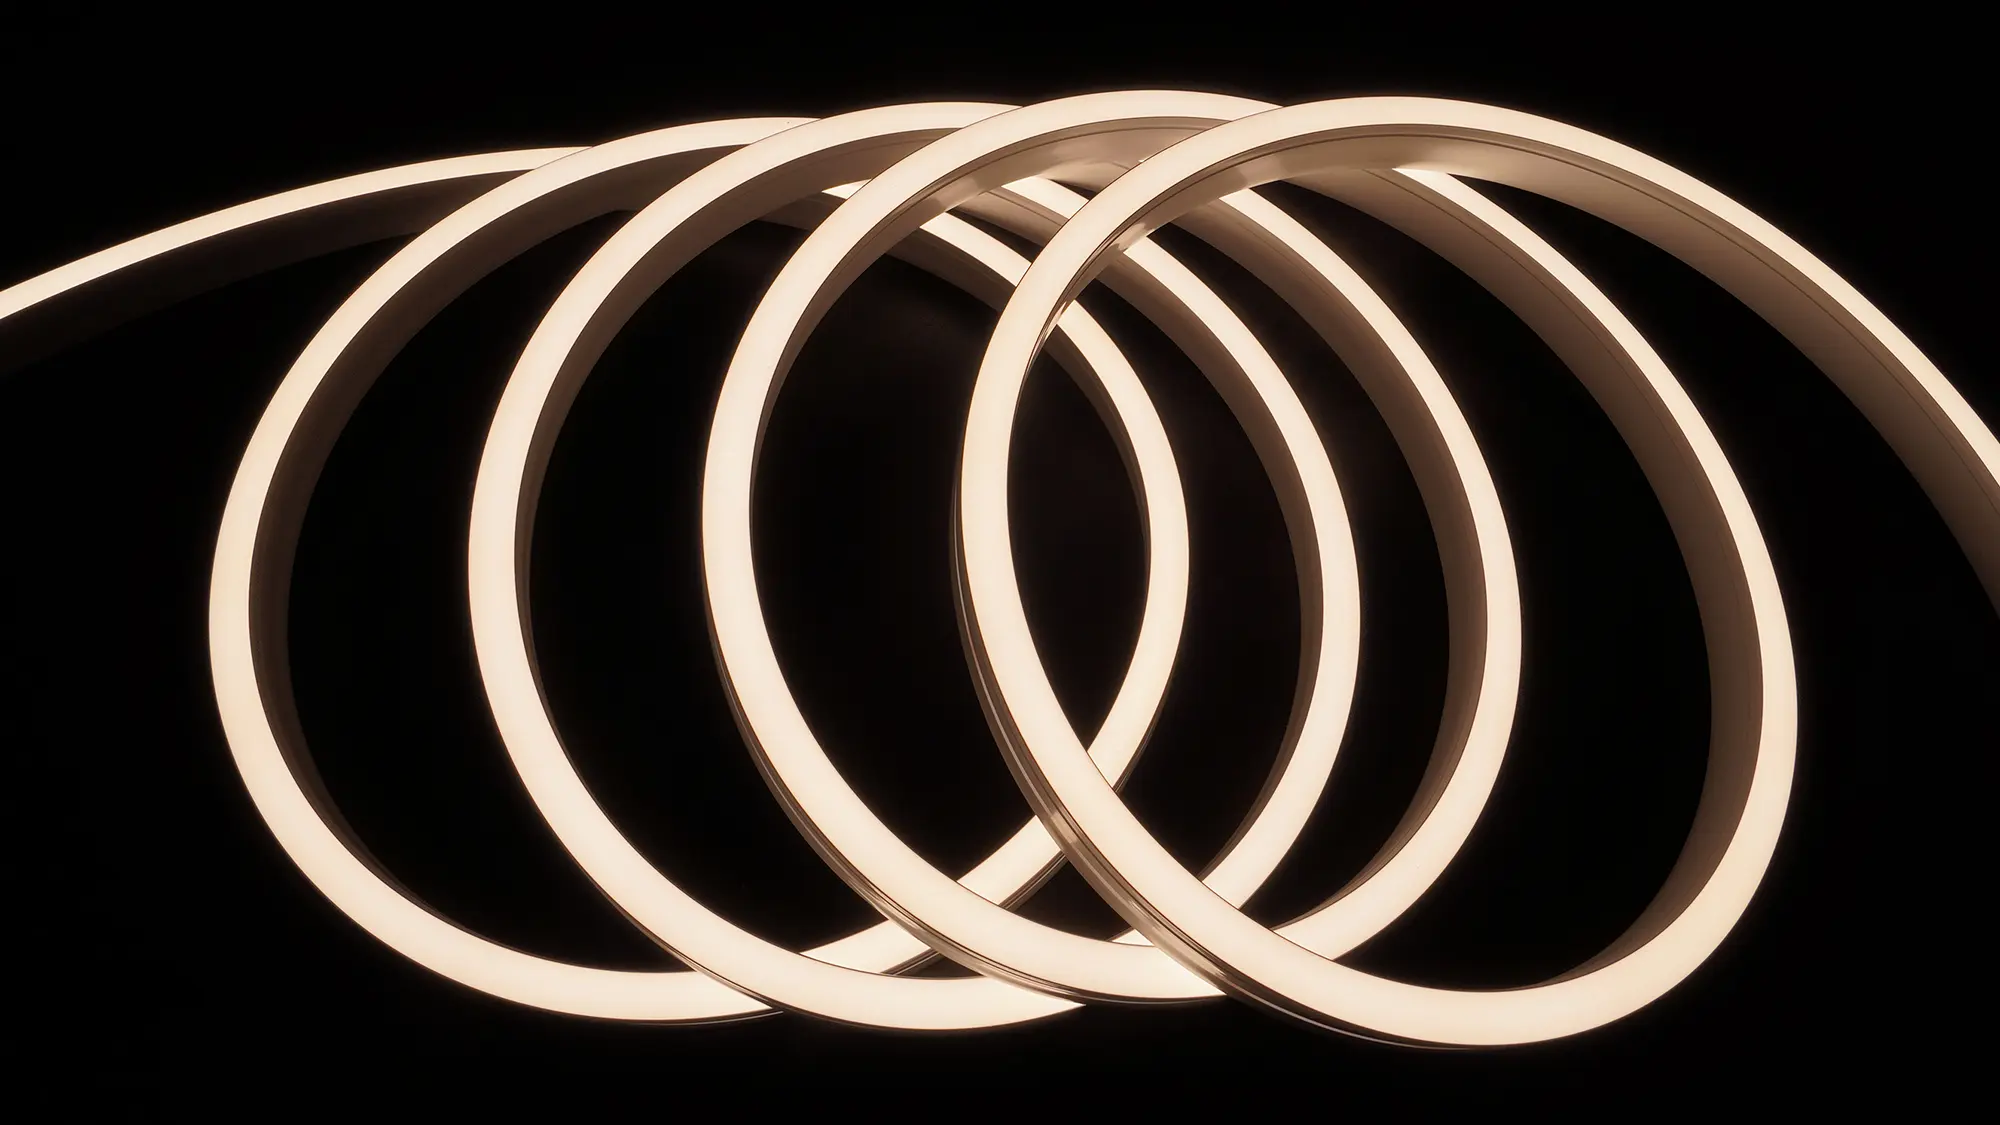 Tube néon flex moyen pour ruban LED - latéral – L1020 - ®